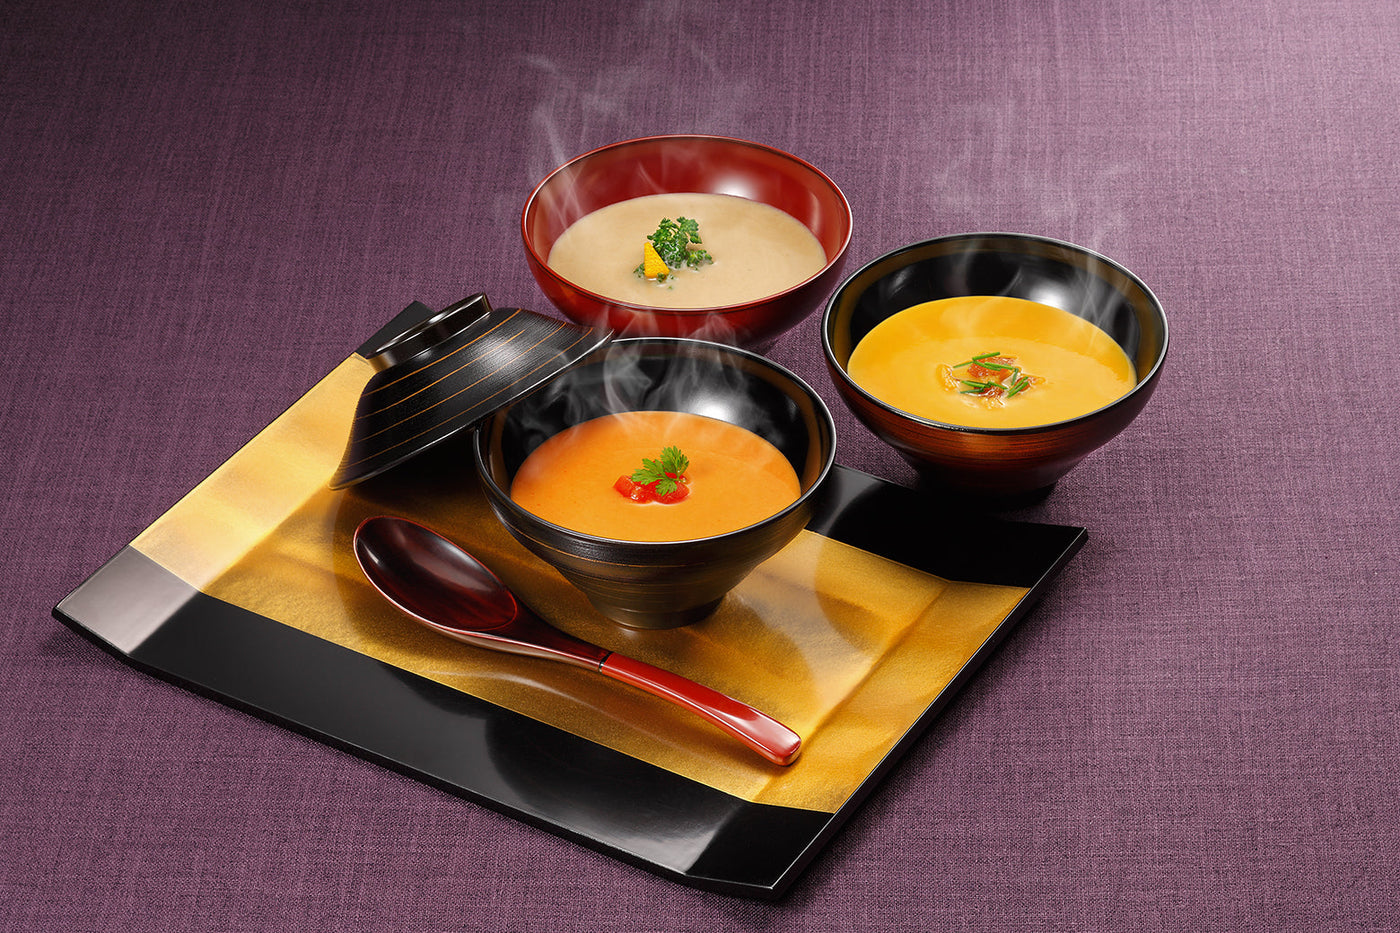 和風スープ(3個) 渡り蟹・かぼちゃ・繊維野菜